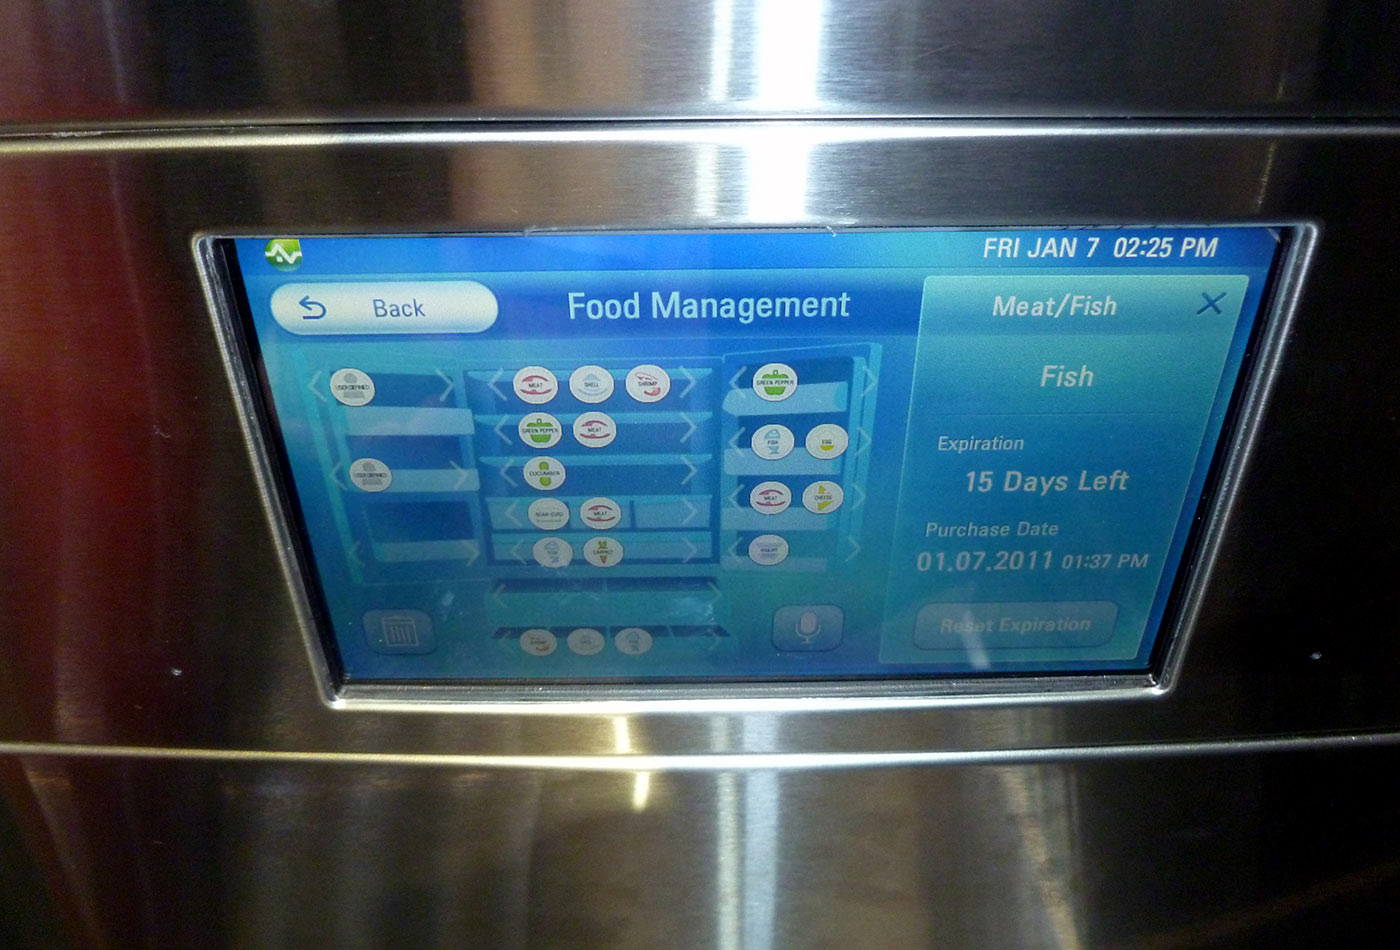 LG Smart Refrigerator, CES 2011.